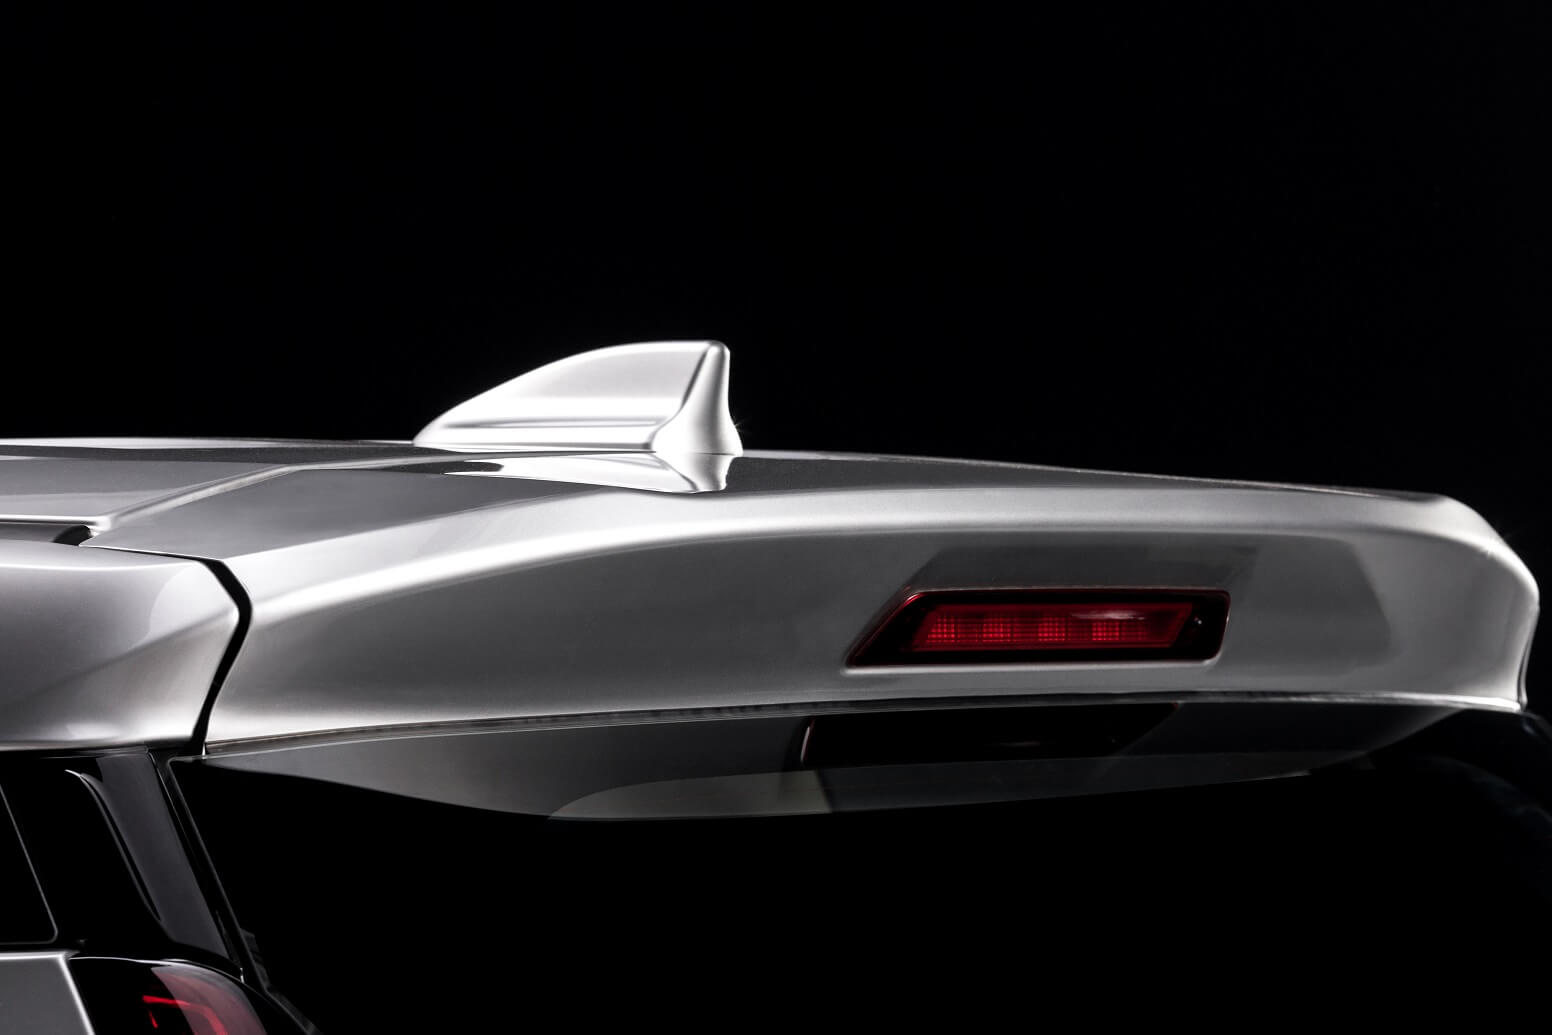 Đèn đuôi và đèn phanh chữ L tách rời, cụm đèn hậu được thiết kế đẹp mắt tích hợp cùng công nghệ đèn LED giúp tăng thêm vẻ cuốn hút cho Xpander 2020. Ngoài ra, phiên bản mới được trang bị thêm ăng-ten vây cá hiện đại giúp tăng thêm tính thẩm mỹ cho xe.